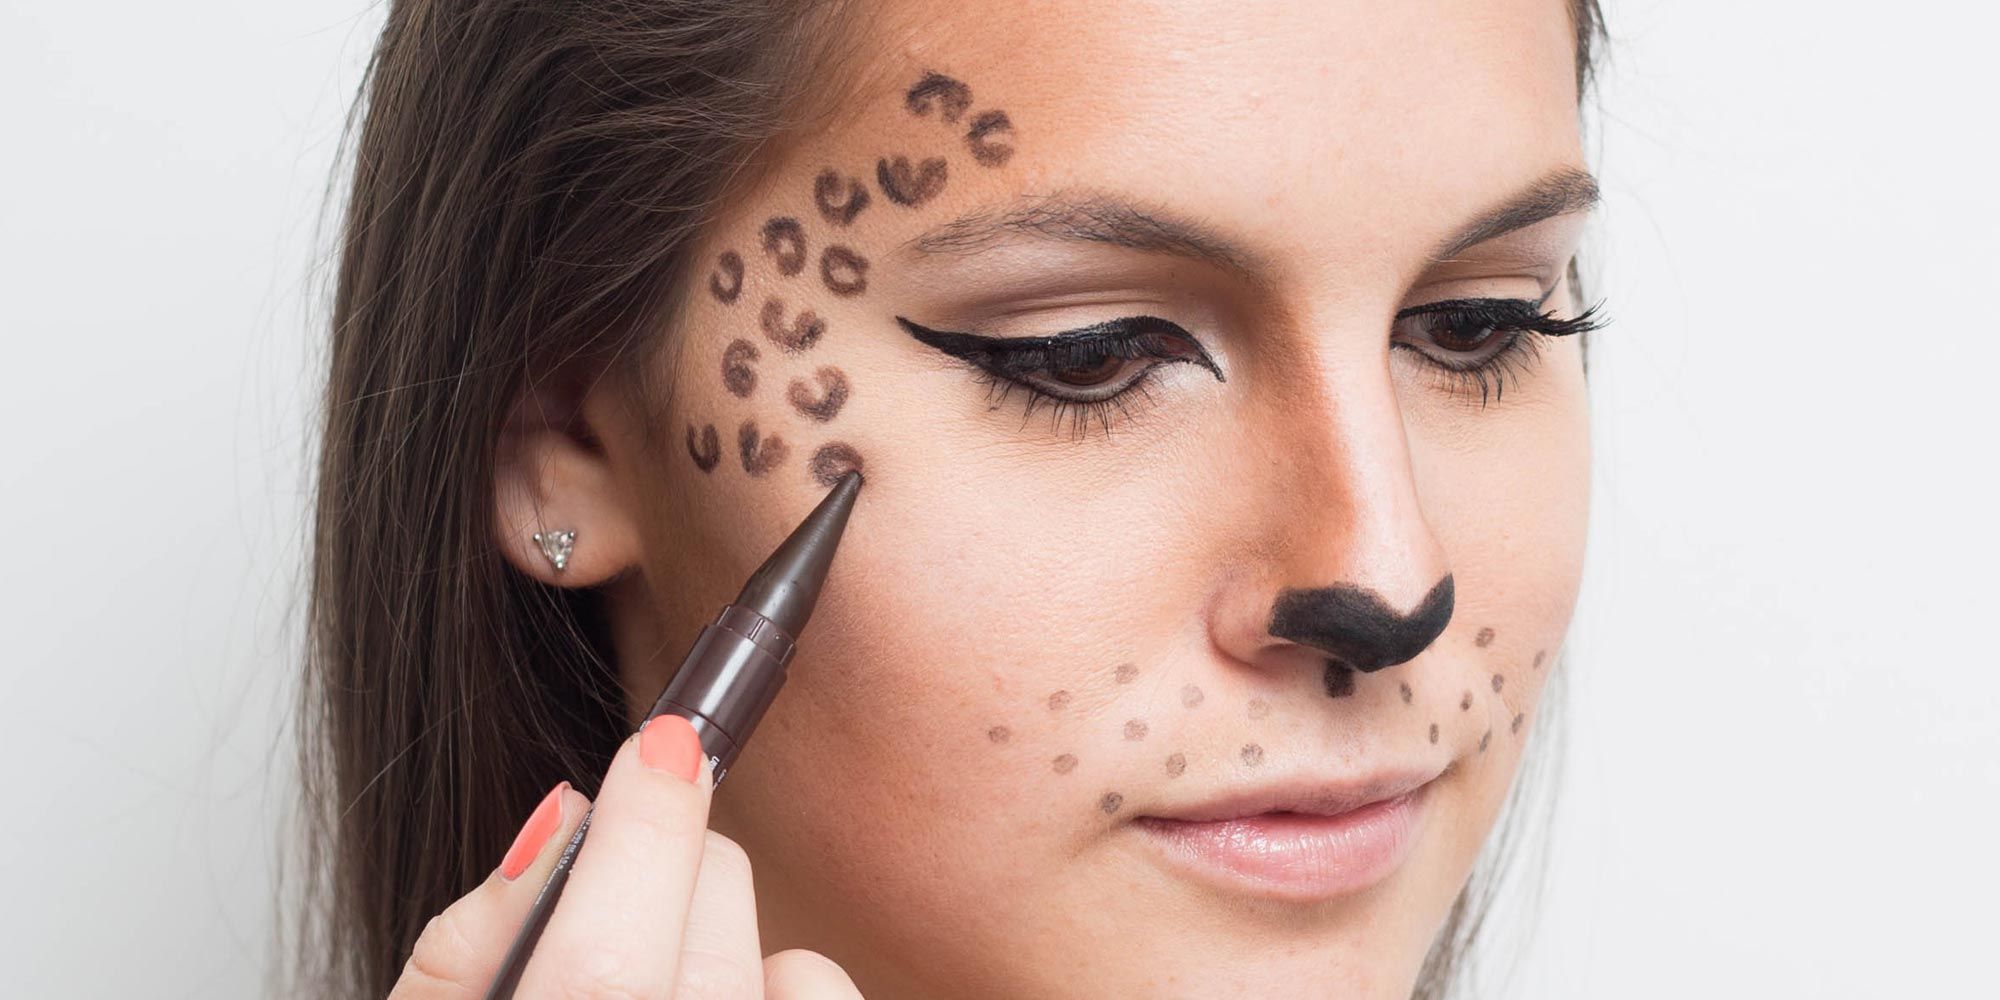 simple cheetah makeup